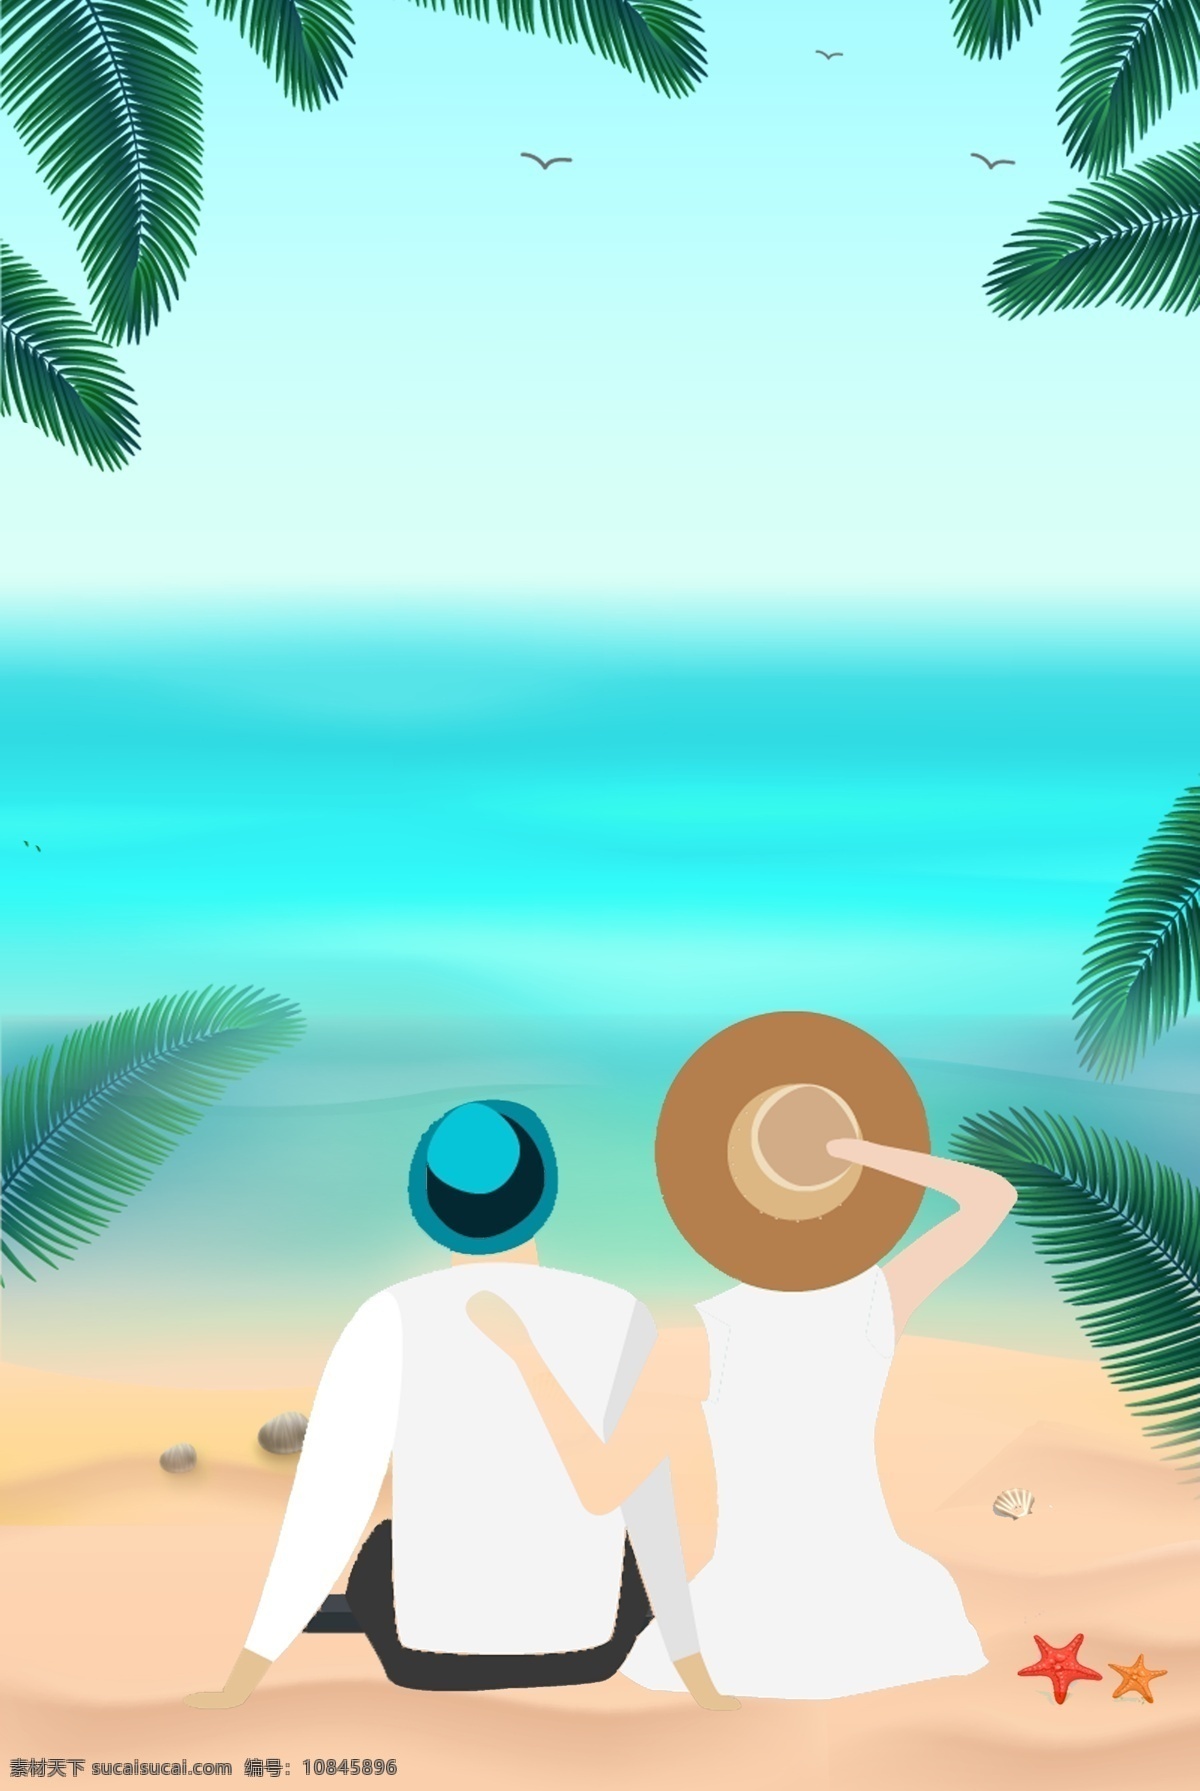 蓝色 清新 夏季 情侣 海滩 背景 海滩背景 沙滩 大海 椰树 海星 夏日旅行 夏天 立夏